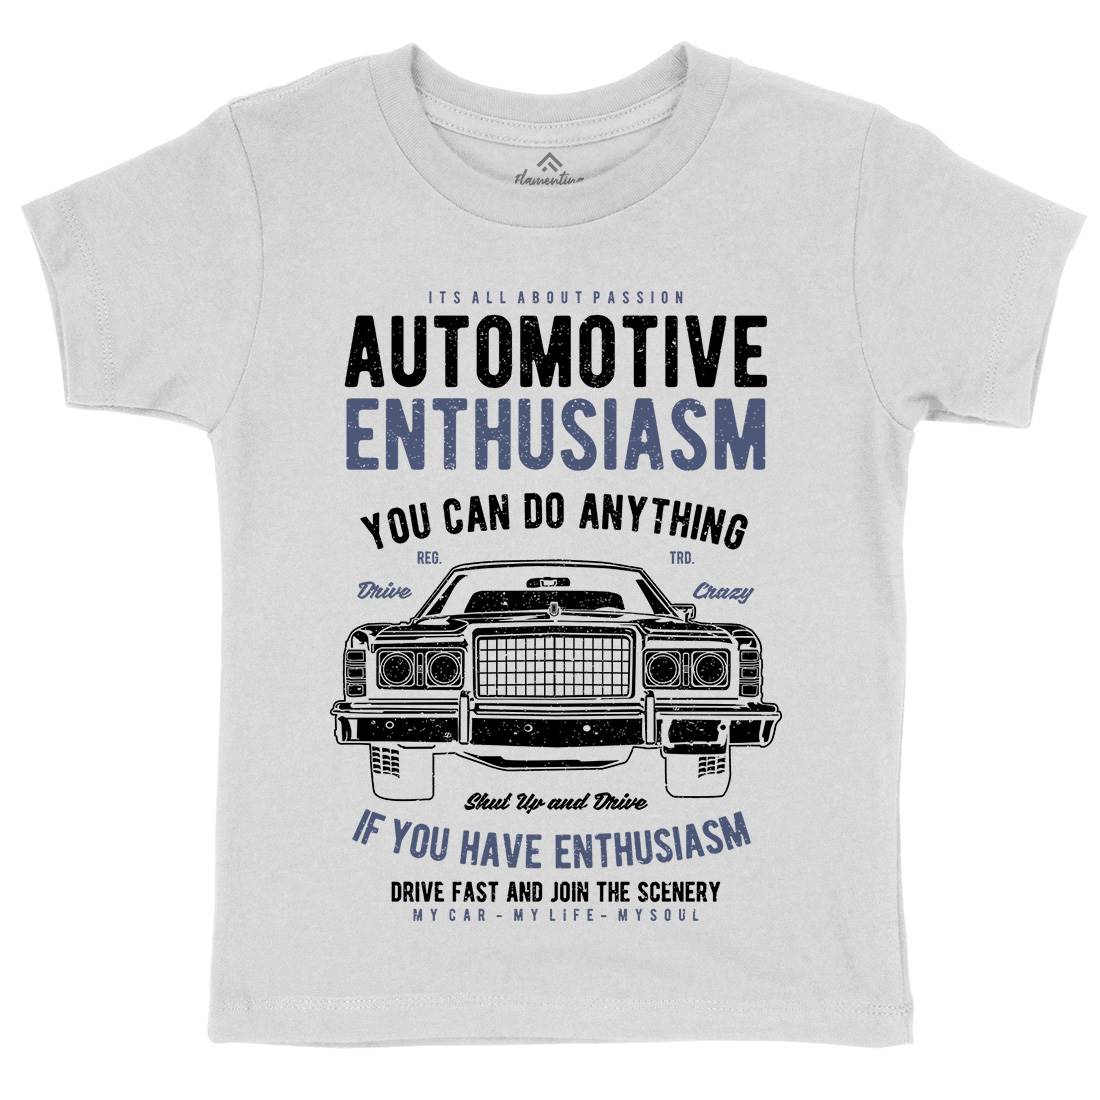 Automotive Enthusiasm Kids Crew Neck T-Shirt Cars A614